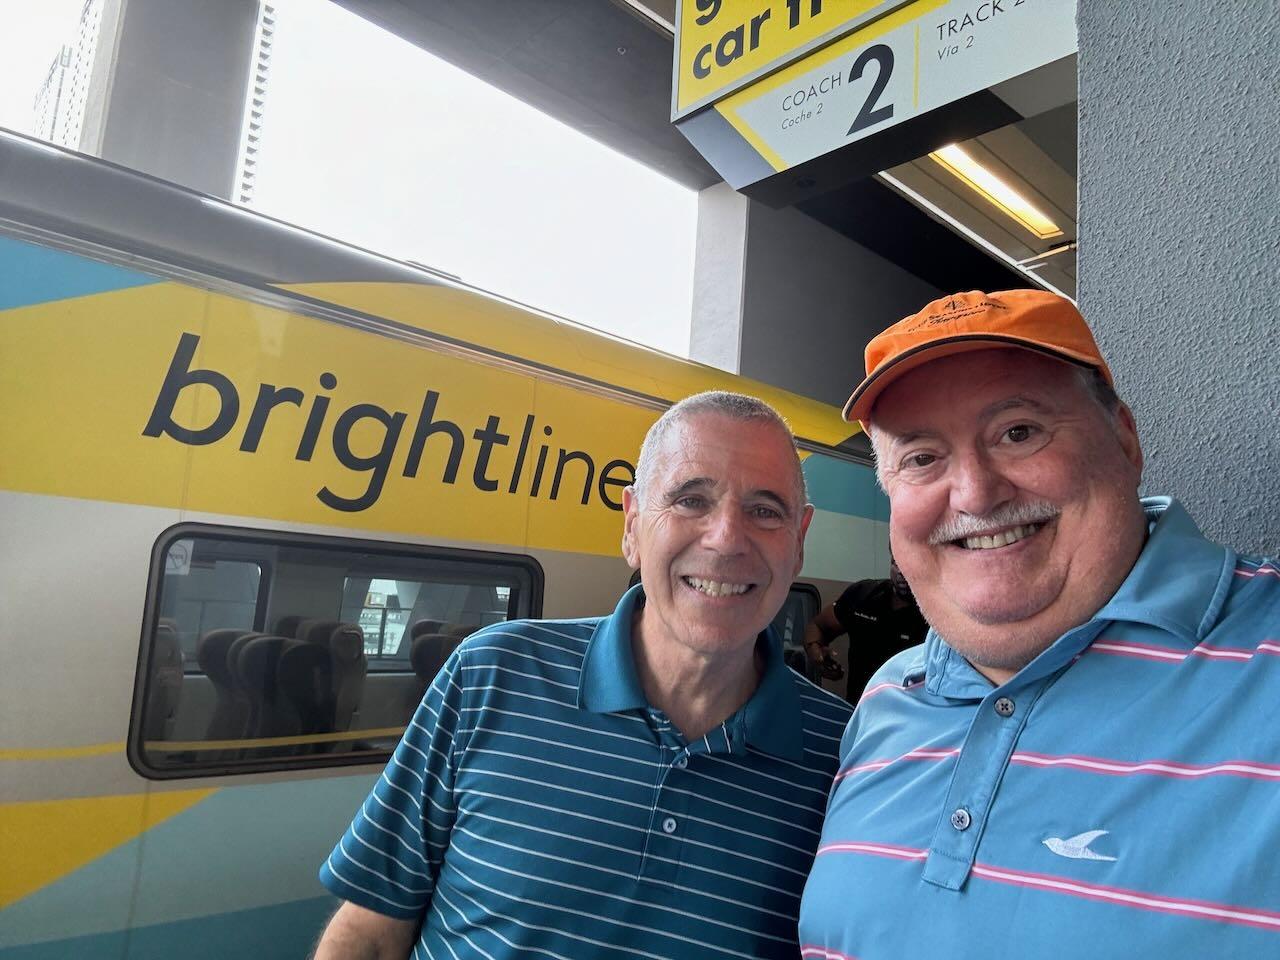 Journey to Miami on the Brightline Train!